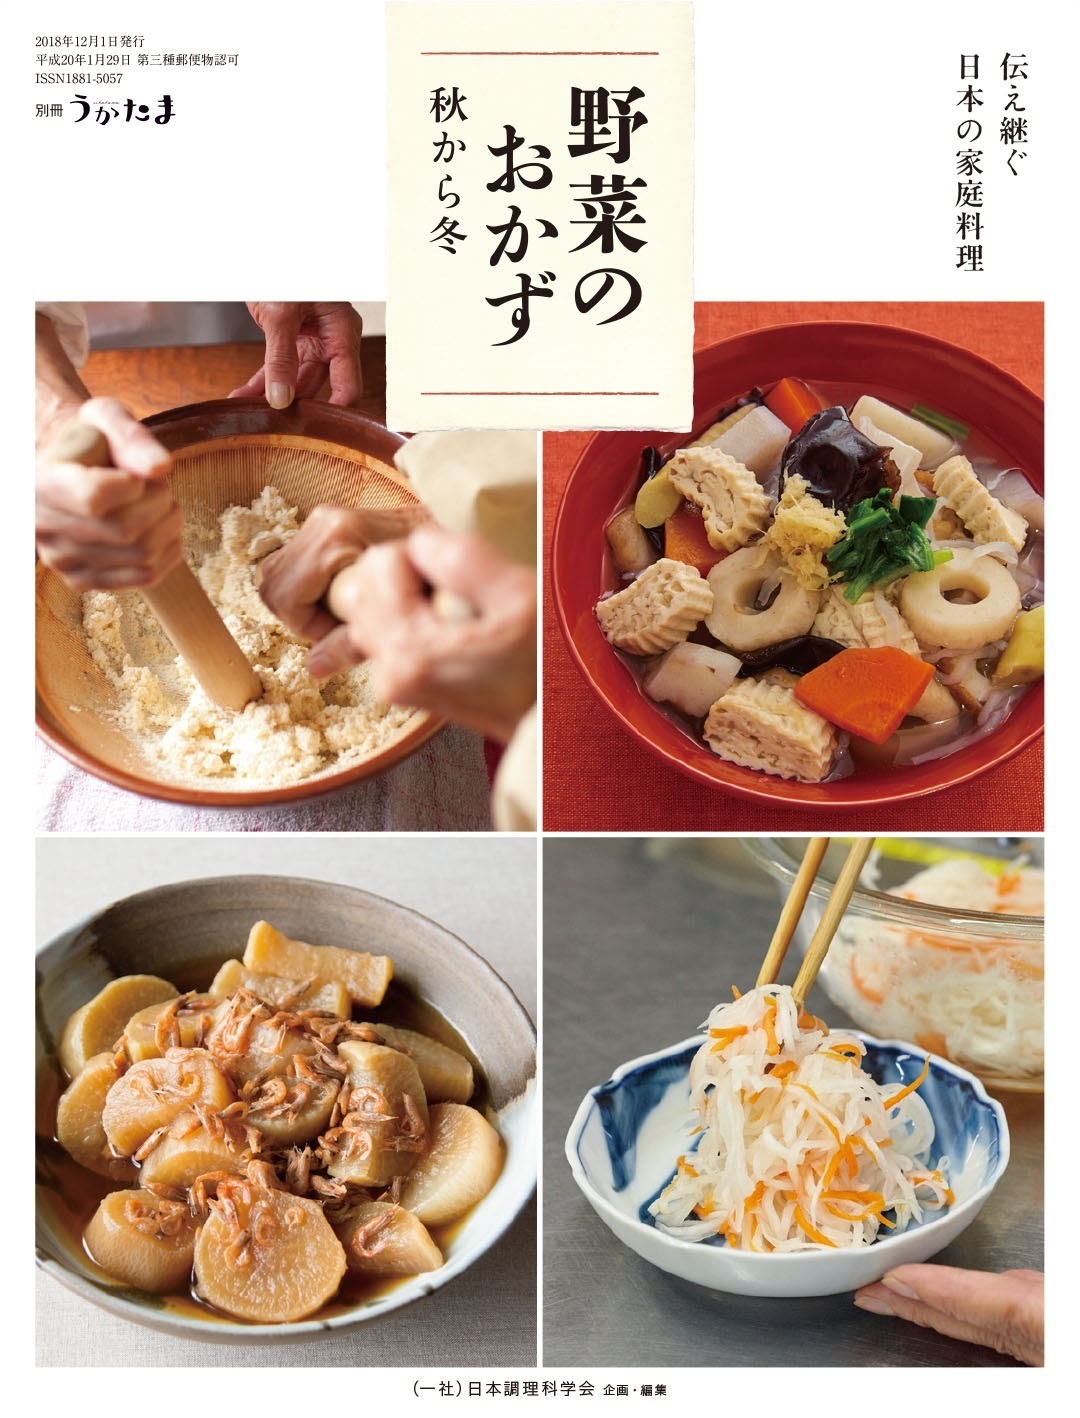 野菜のおかず 秋から冬 伝え継ぐ日本の家庭料理